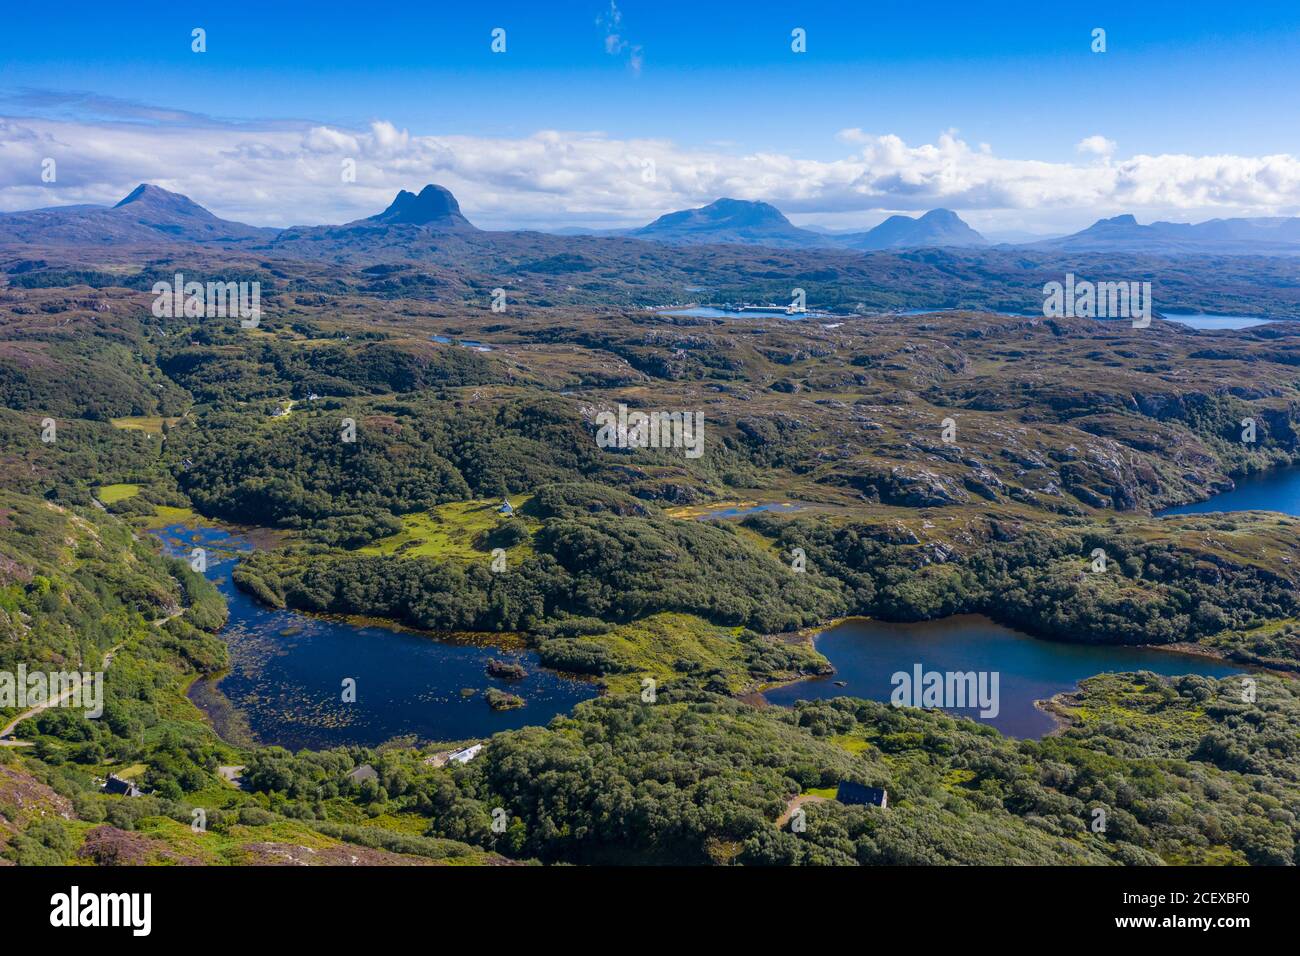 Vista aerea delle montagne nella regione di Assynt Coigach delle Highlands scozzesi, Scozia, Regno Unito Foto Stock